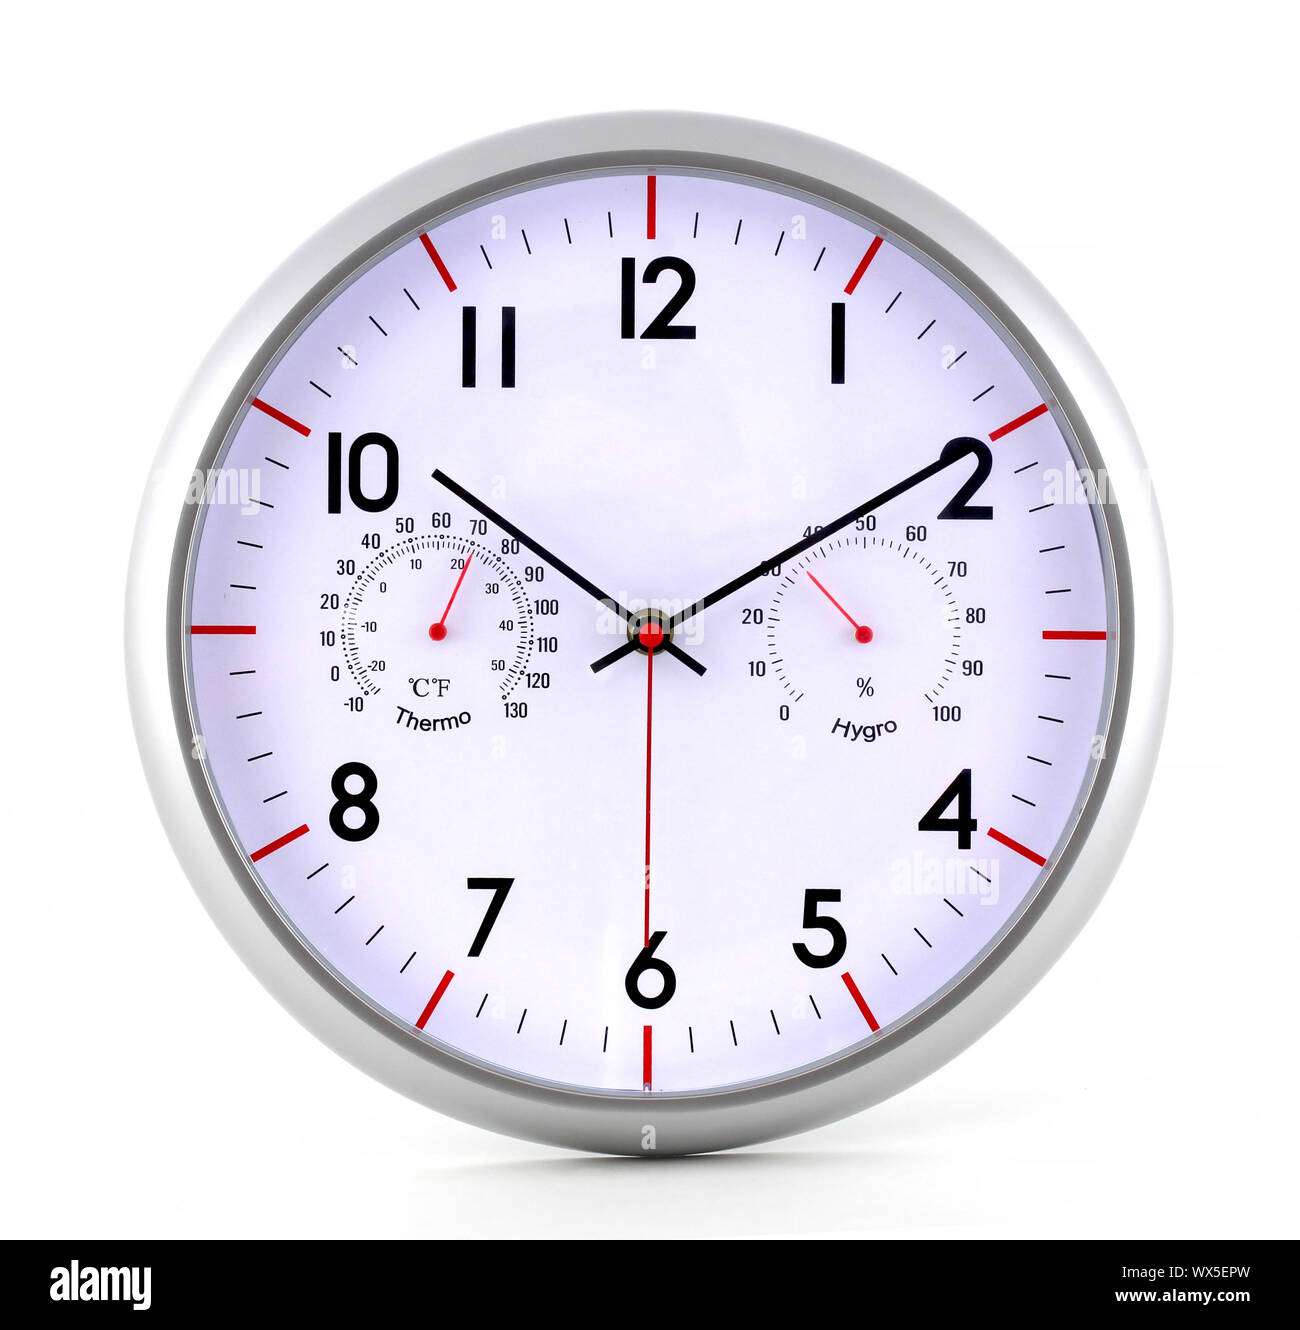 Un reloj de metal con un cronómetro determina tanto el reloj y el tiempo. El reloj está aislado en un fondo blanco. Foto de stock